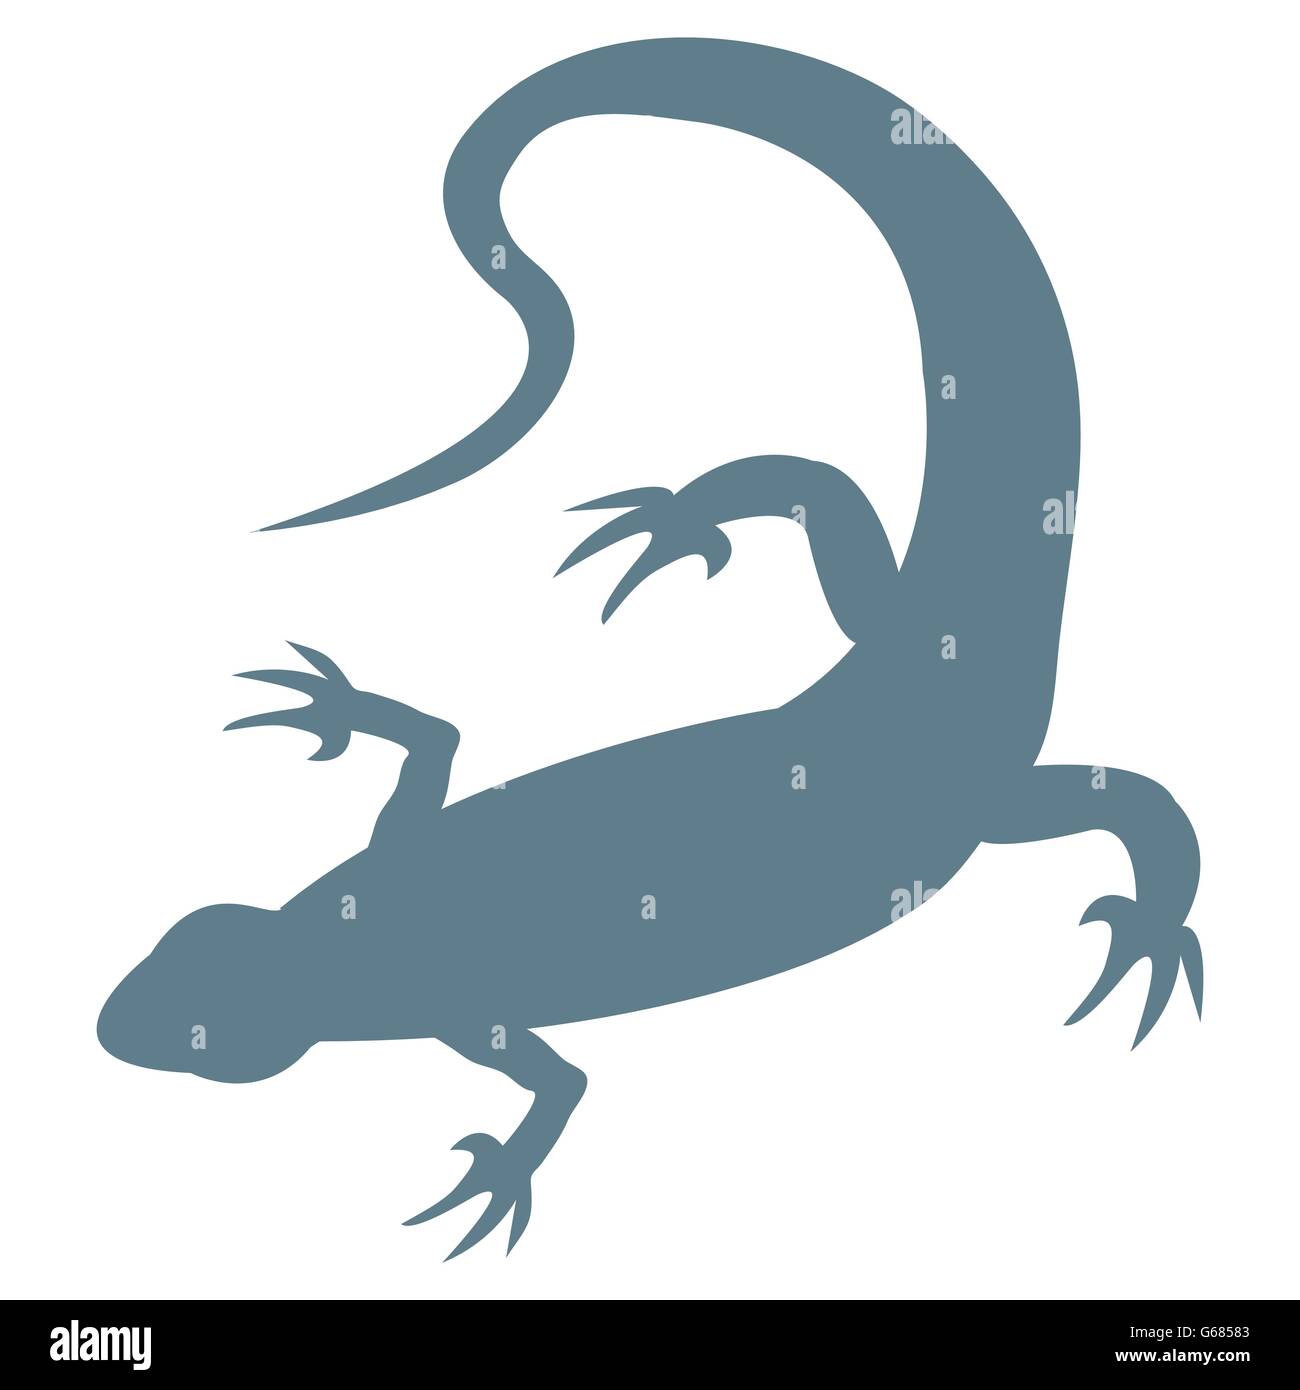 Salamander drawing: Bạn có bao giờ vẽ một bức tranh với chú kỳ đà nhỏ xinh thế này chưa? Hãy xem hình ảnh và cảm nhận sự dễ thương và đáng yêu của hình ảnh salamander drawing này ngay thôi!